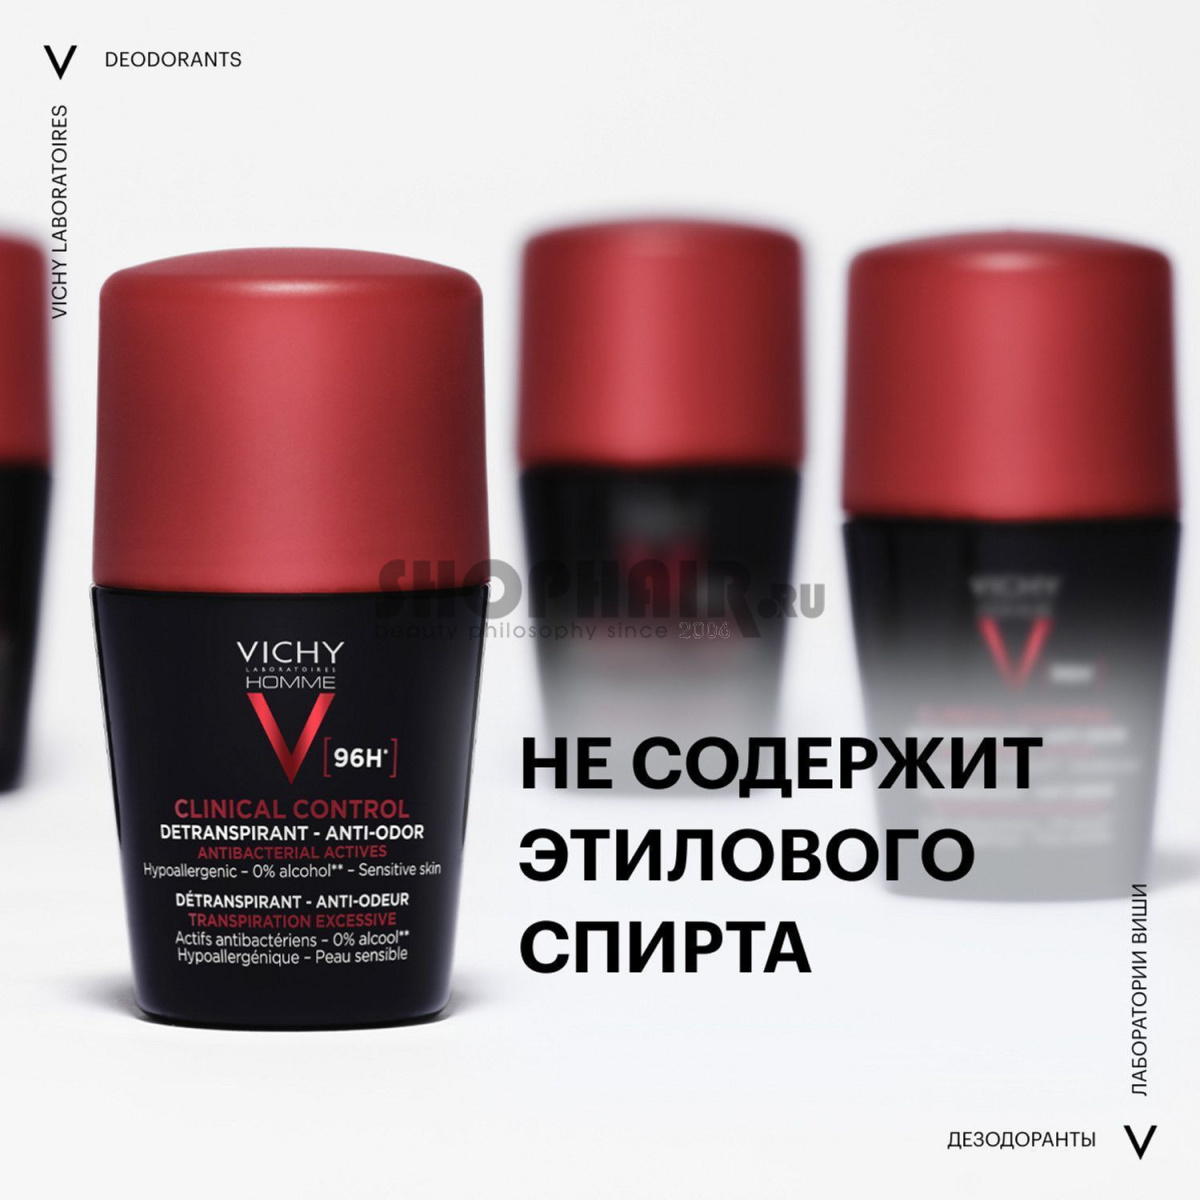 Vichy Homme Clinical Control - Дезодорант-антиперспирант 96 ч 50 мл Vichy (Франция) купить по цене 1 299 руб.